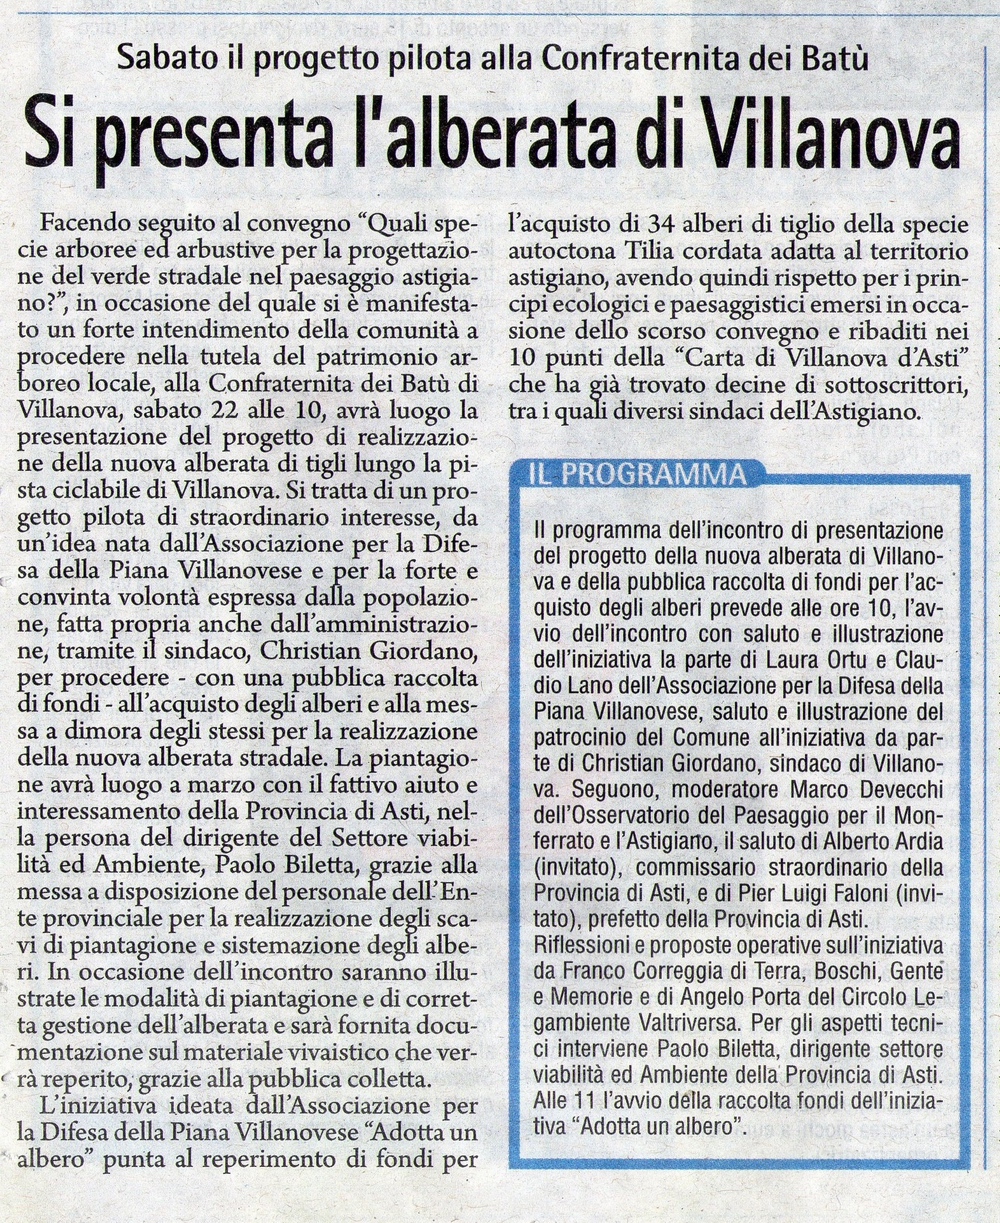 Articolo della Gazzetta d Asti di Venerdì 21 febbraio 2014 sulla presentazione del Progetto della nuova alberata di Villanova d Asti e della pubblica raccolta di fondi per l acquisto degli alberi.